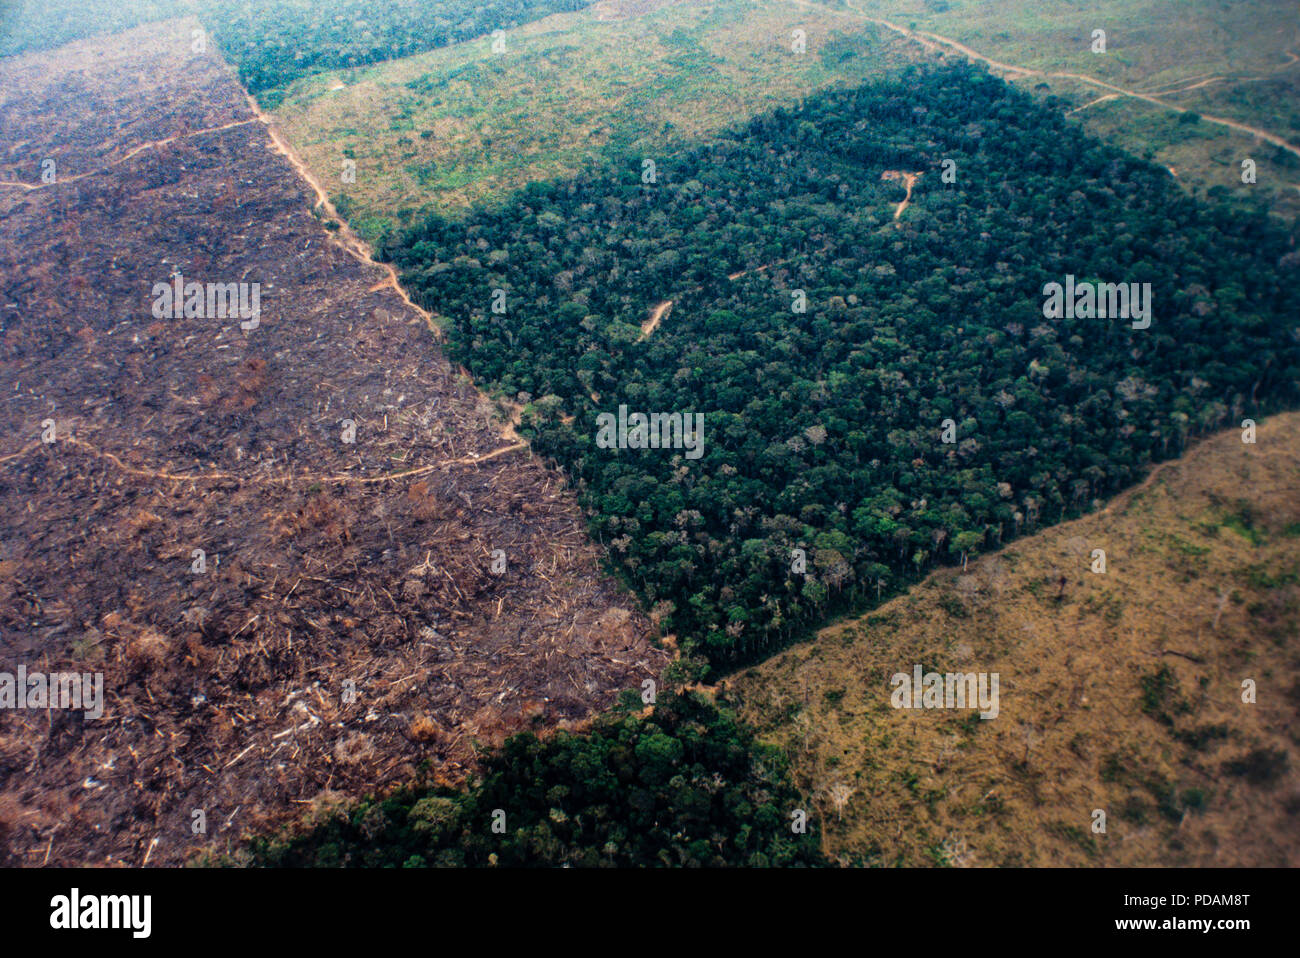 Vue aérienne de la forêt amazonienne la déforestation et de la gestion de l'agriculture de l'élevage. L'état d'Acre, au Brésil. Banque D'Images